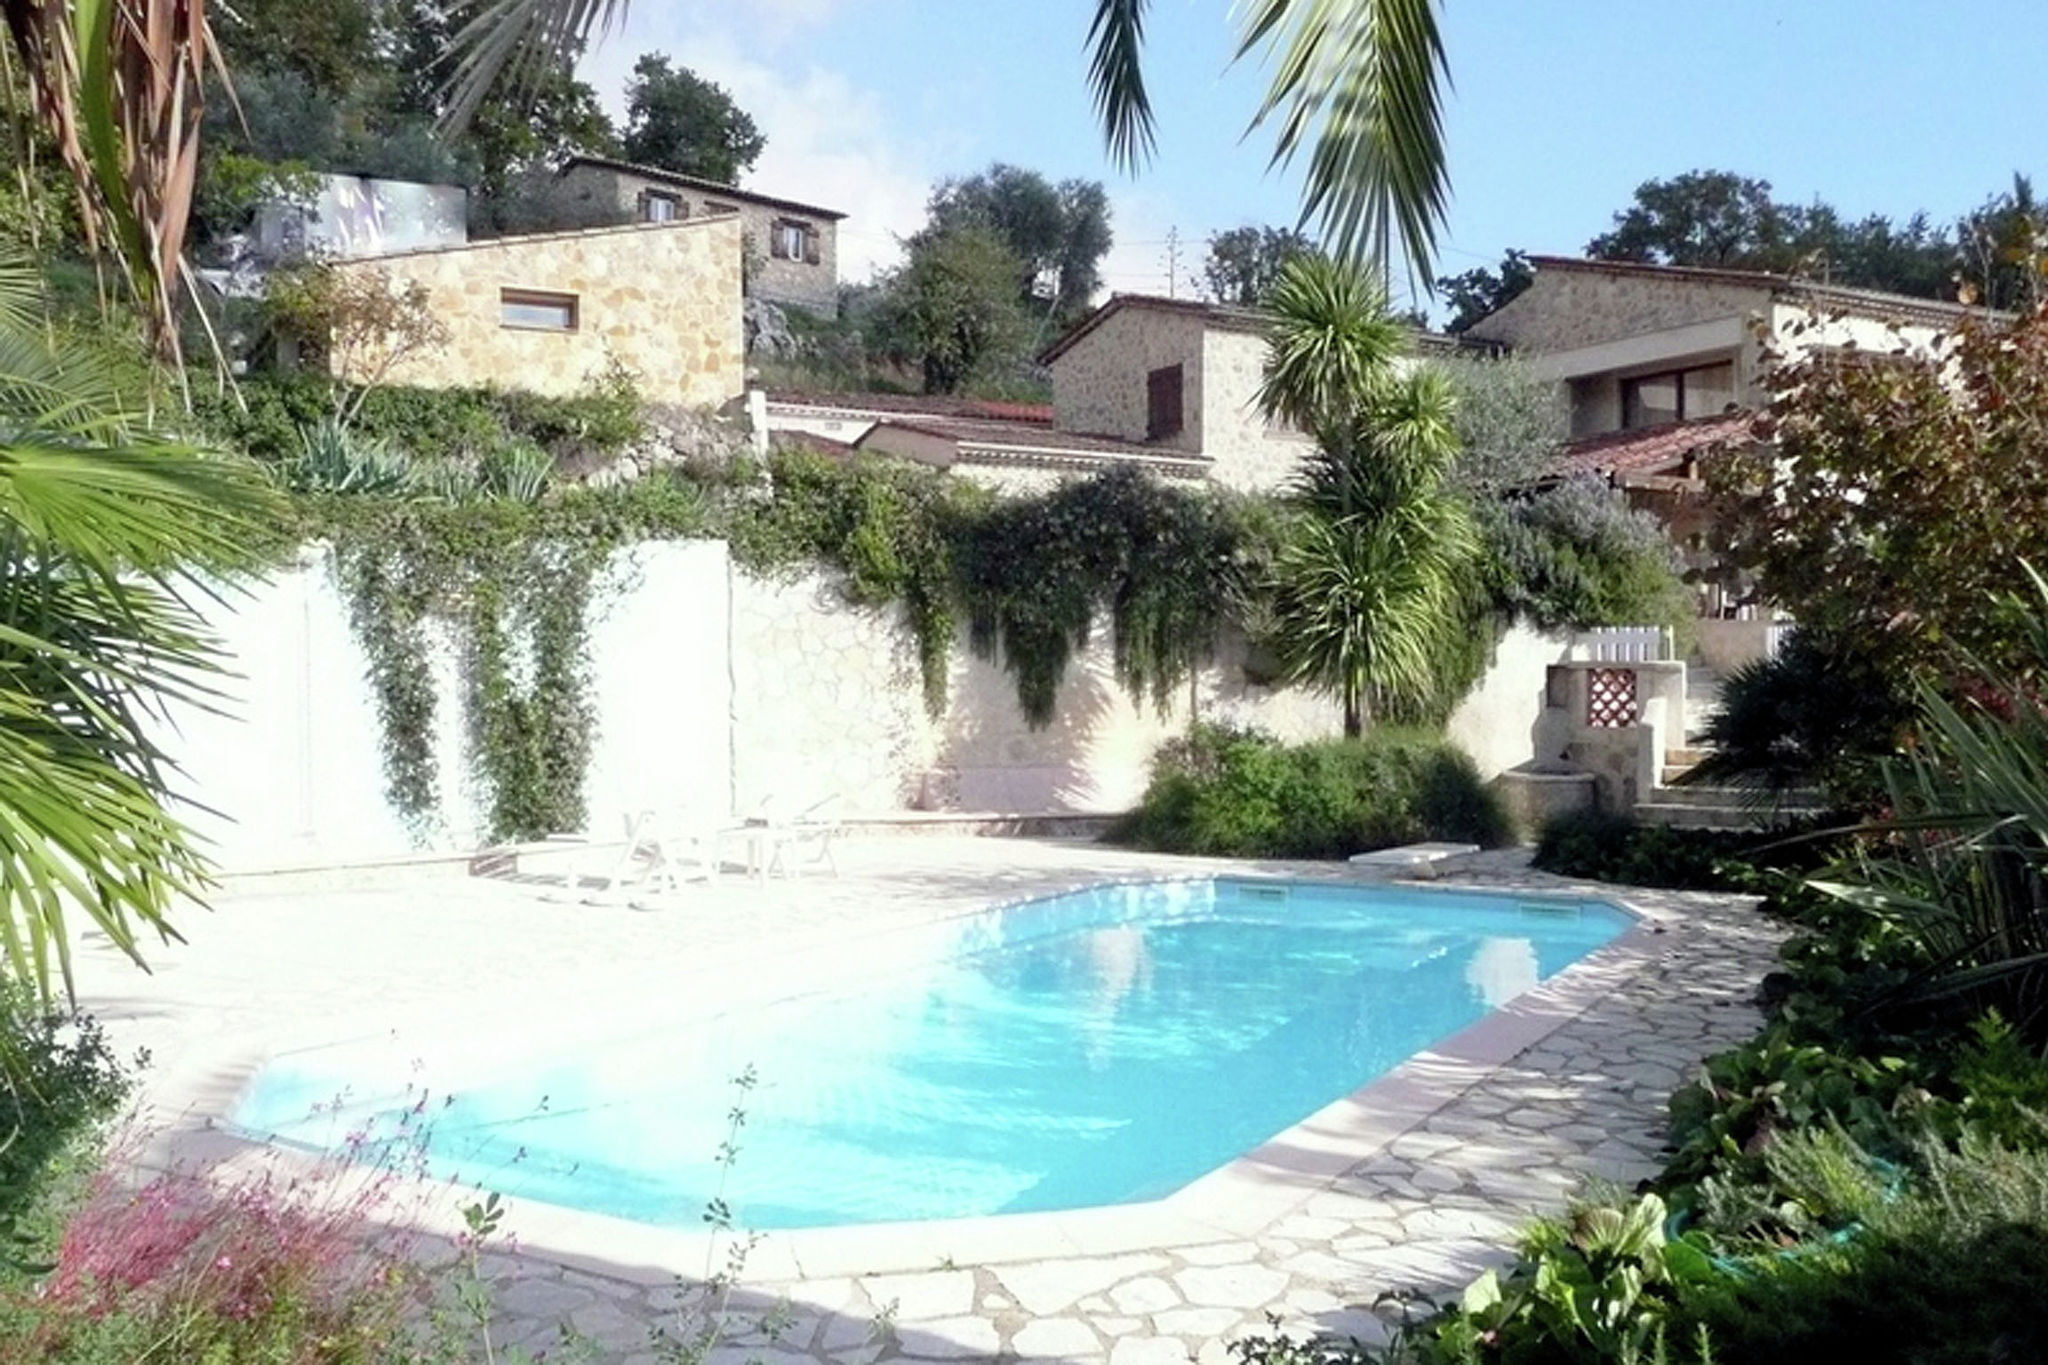 Provençaalse villa met zwembad, tennisbanen en vergezichten in het achterland